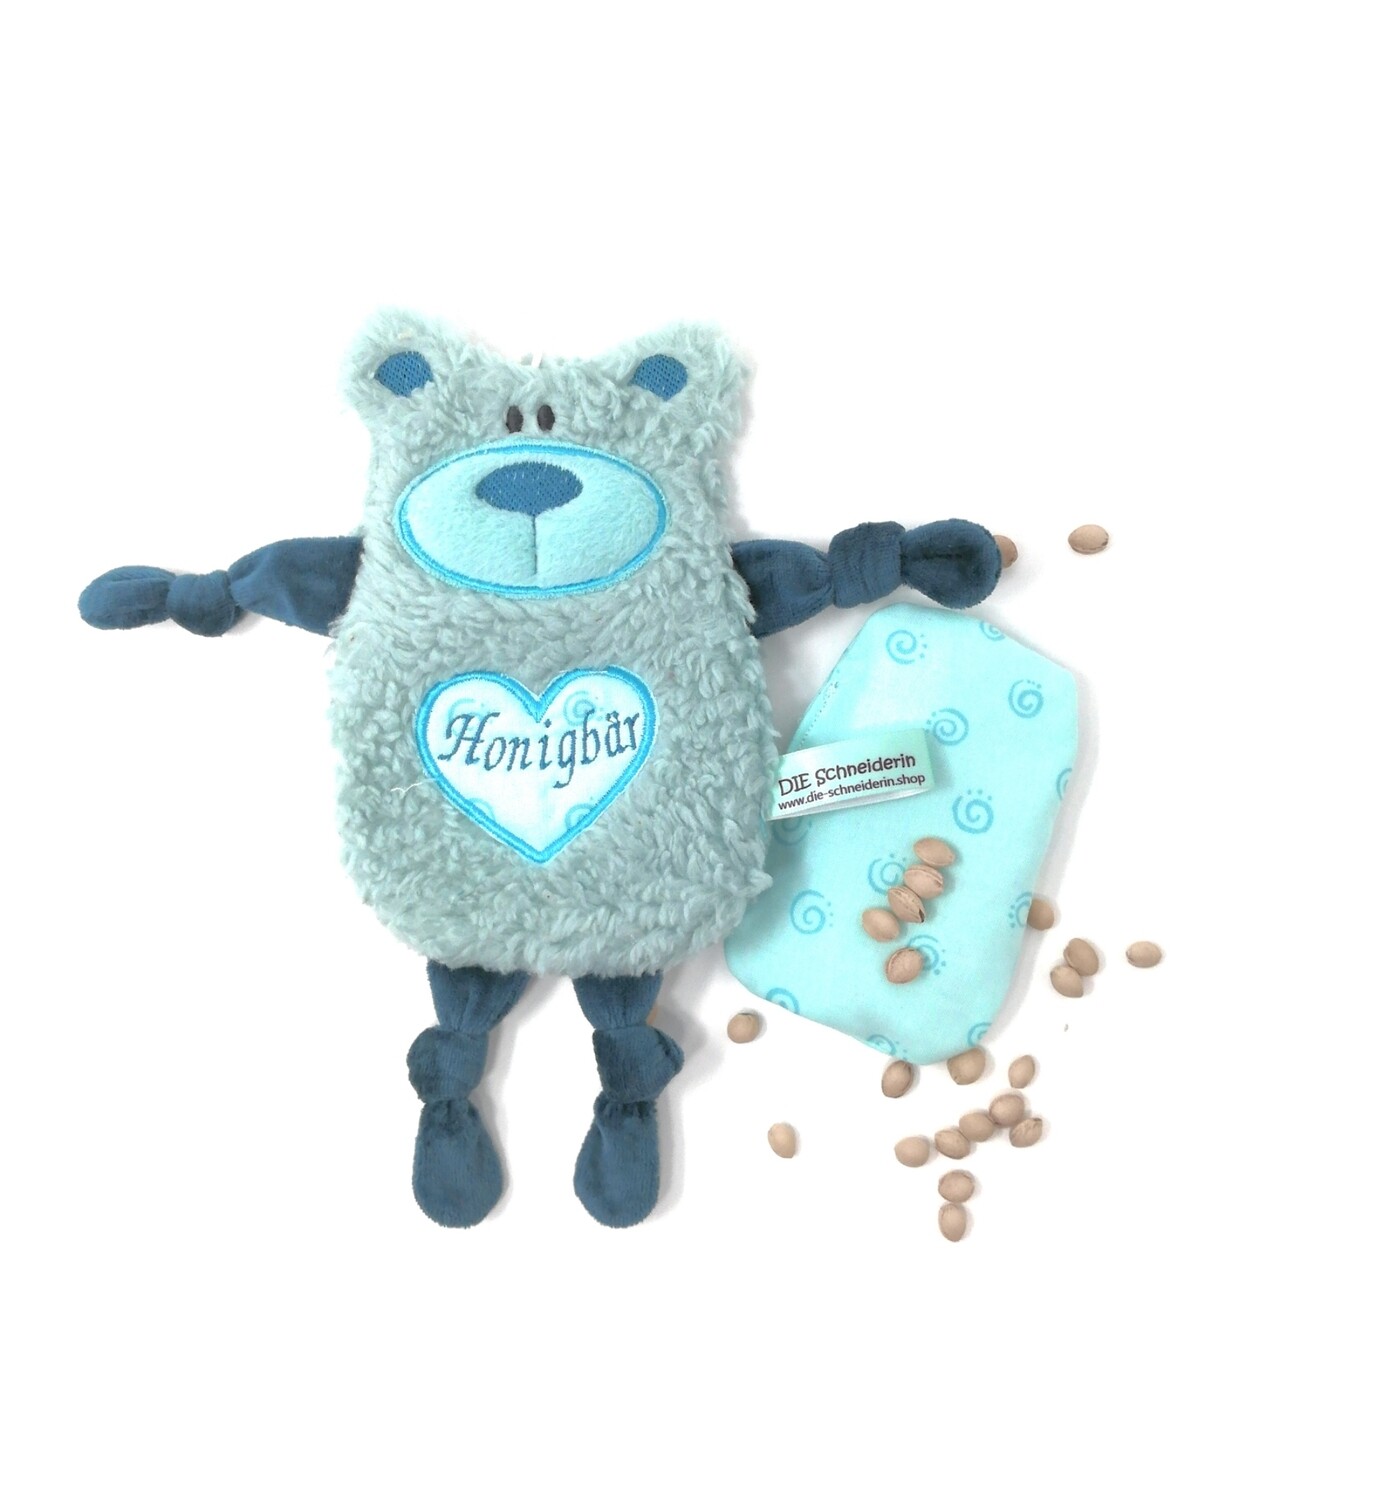 Personalisiertes Plüschtier Baby Bär hellmint mit Namen als Wärmekissen oder Knister-Tuch und Schnullertasche. Ein süßes Baby Geschenk